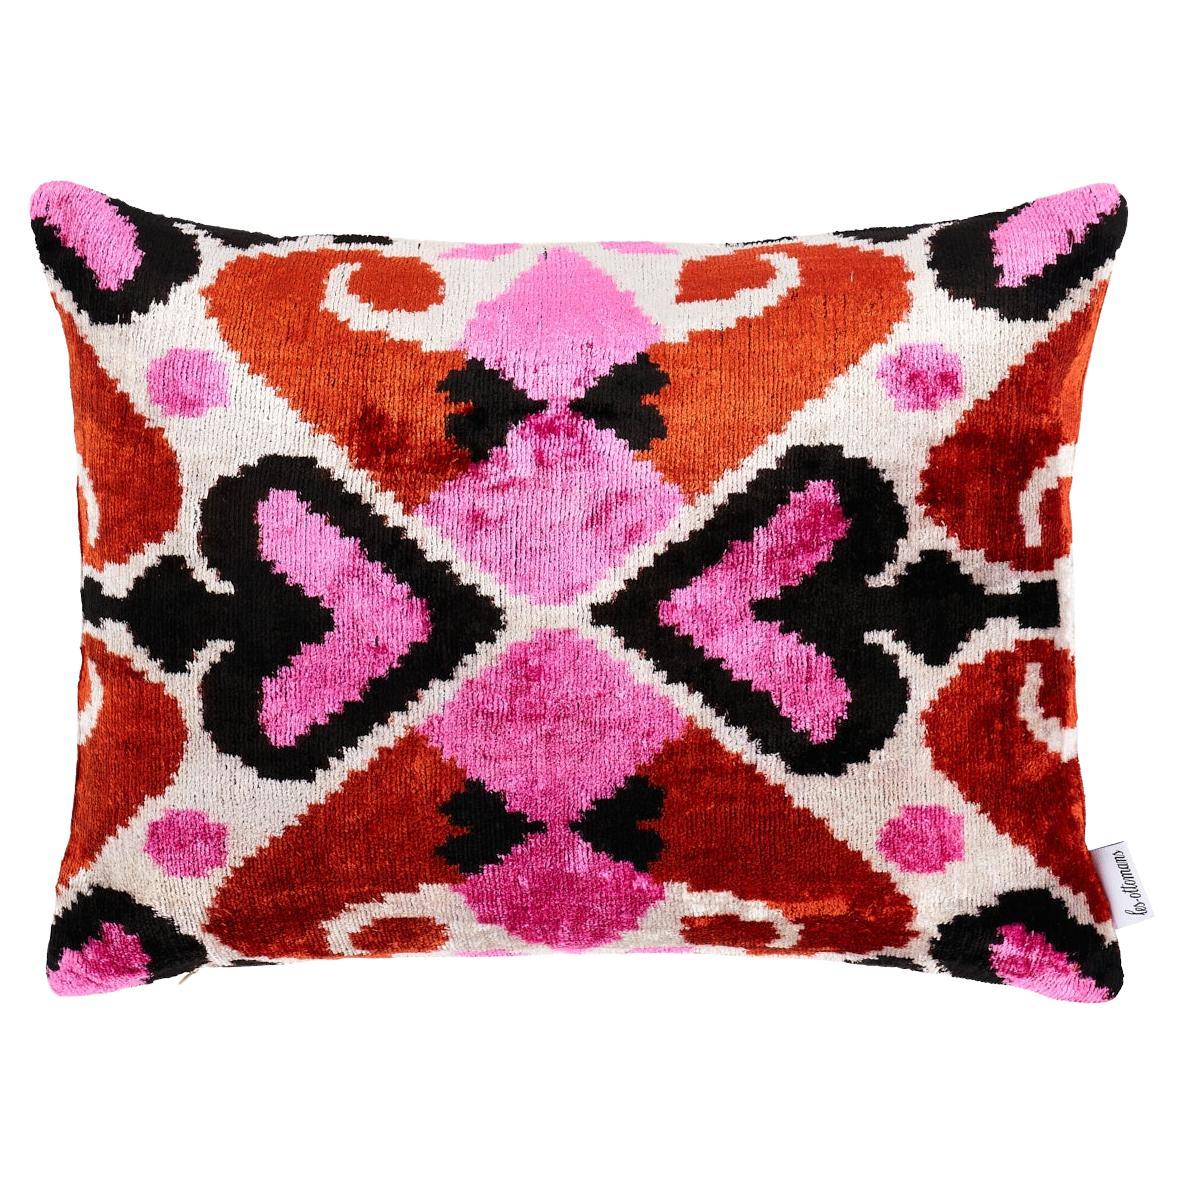 Schumacher Adana Silk Velvet in Pink & Orange 20" x 16" Pillow For Sale